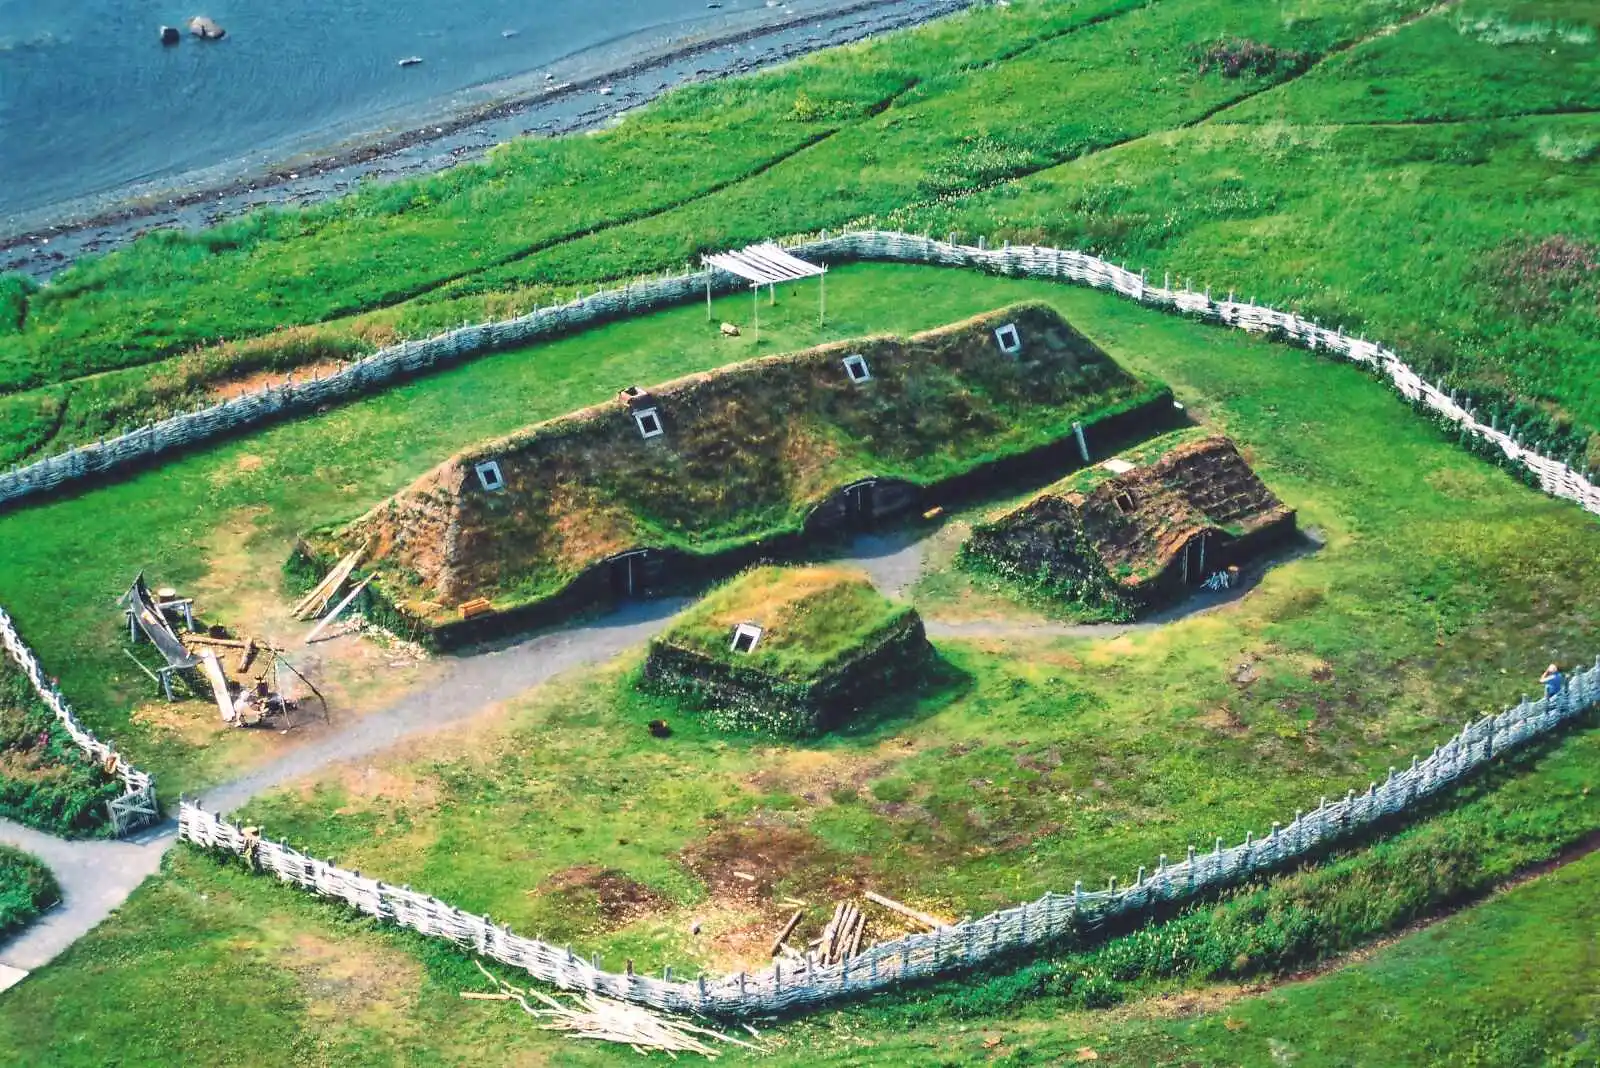 L’Anse aux Meadows (Straumfjörð, site archéologique viking, Terre-Neuve, Terre-Neuve-et-Labrador, Canada